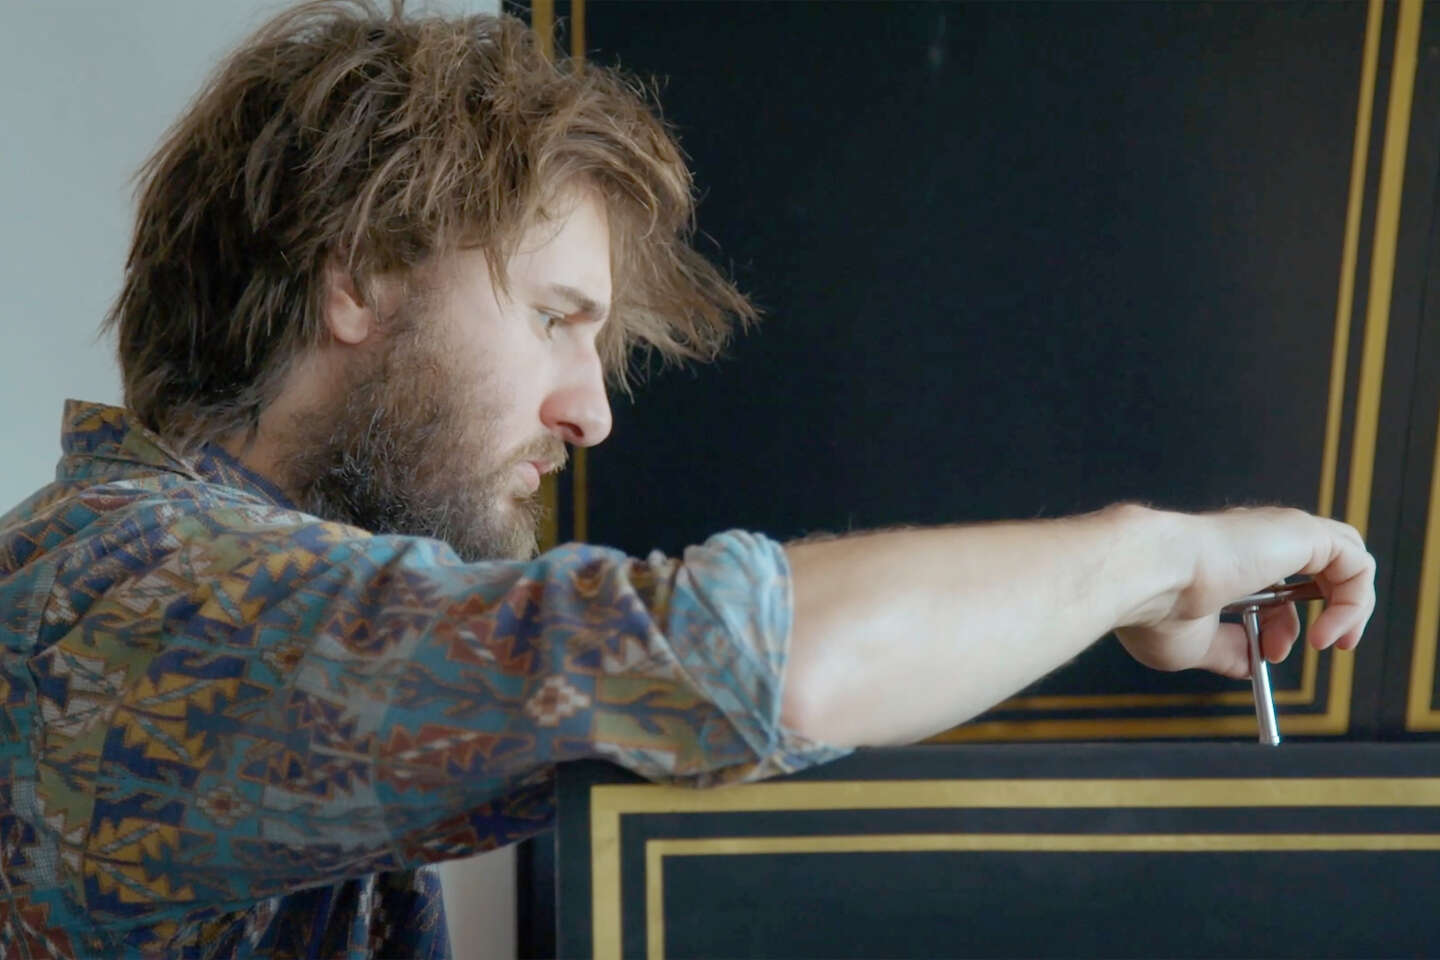 Regarder la vidéo « Le clavecin selon Jean Rondeau », sur Arte.tv, l’homme des éloquences non verbales